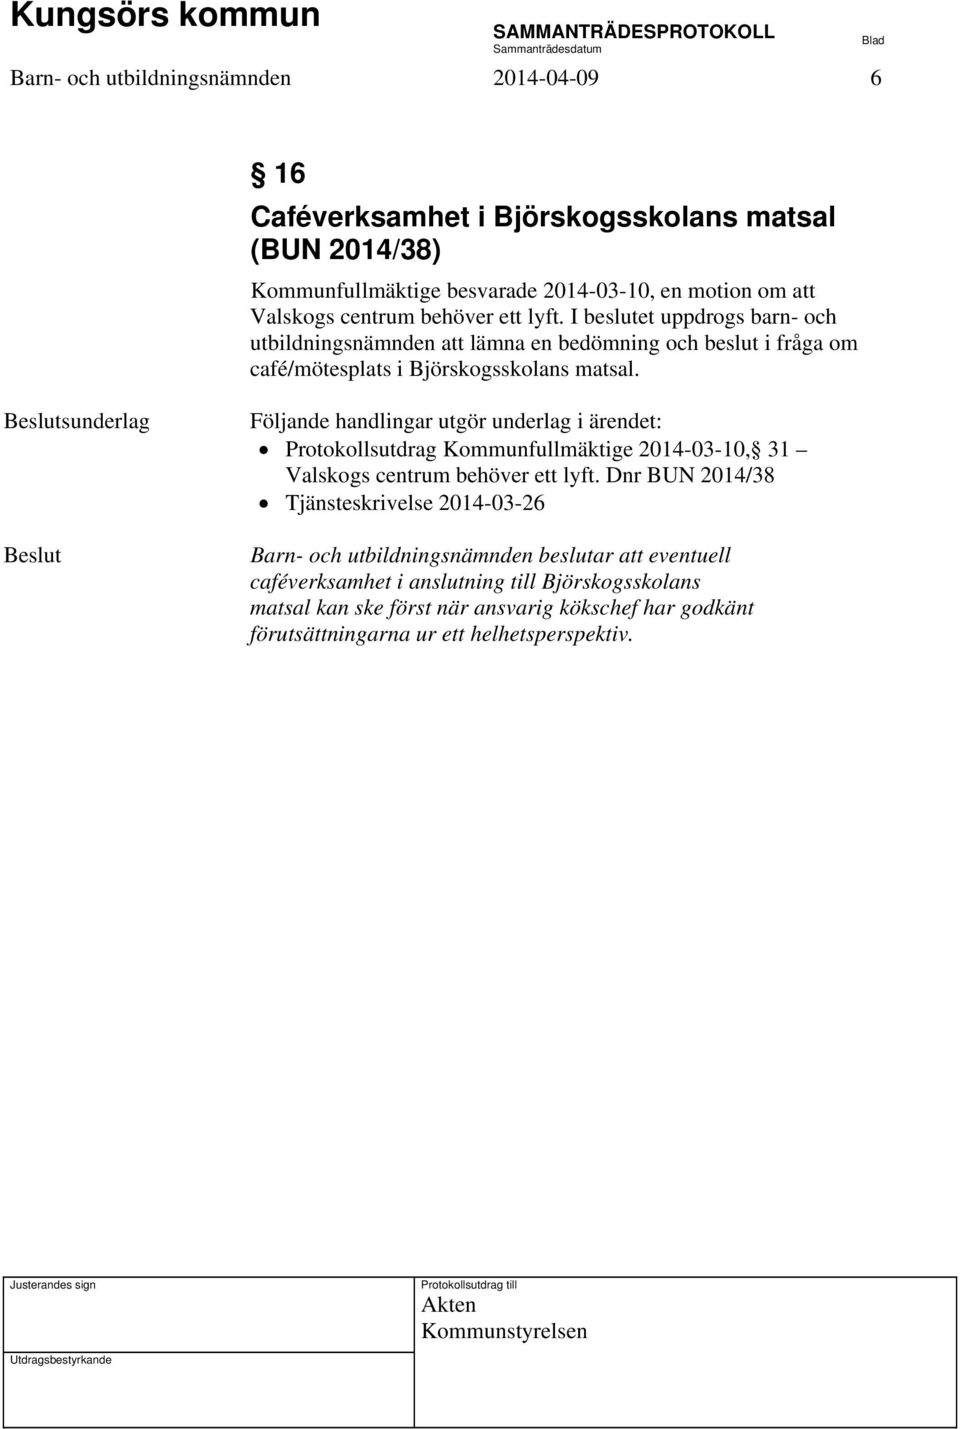 sunderlag Följande handlingar utgör underlag i ärendet: Protokollsutdrag Kommunfullmäktige 2014-03-10, 31 Valskogs centrum behöver ett lyft.